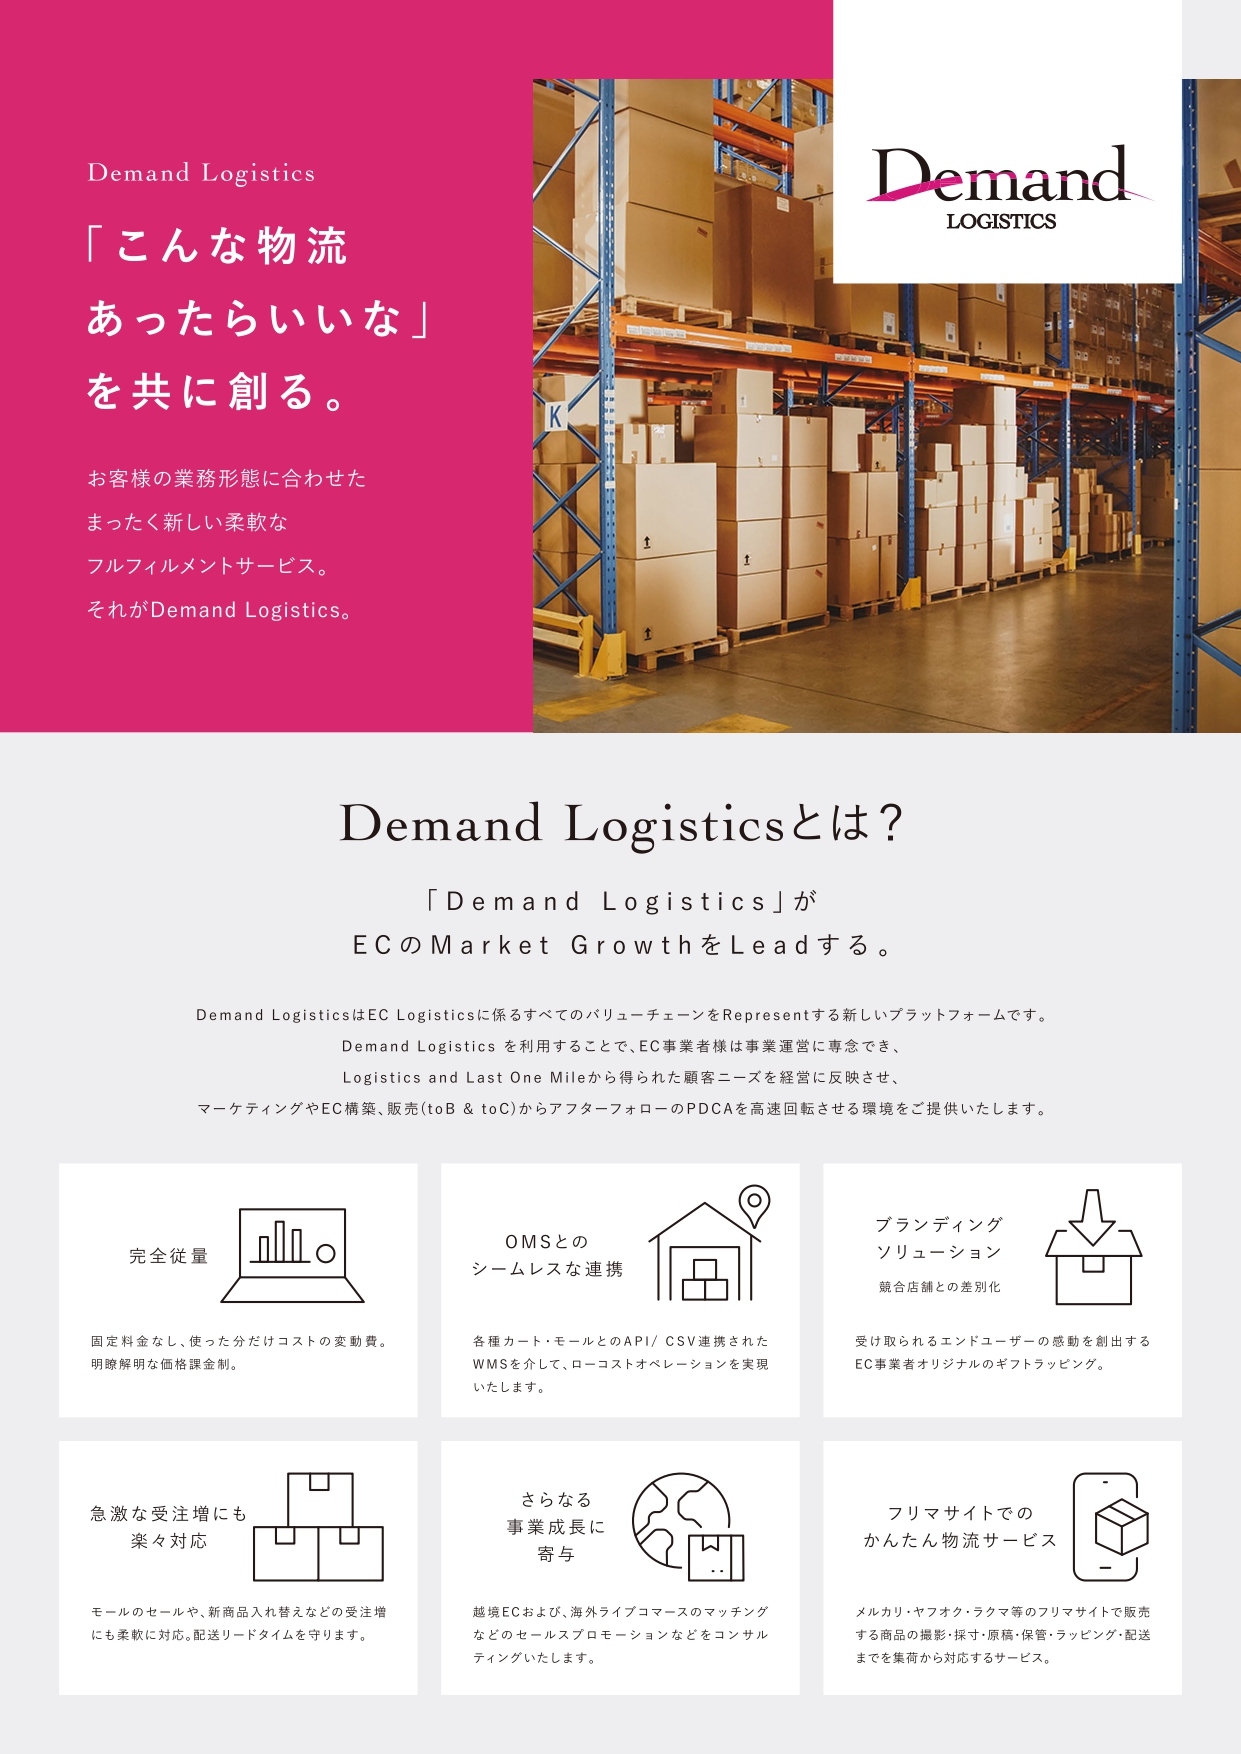 Demand Logistics